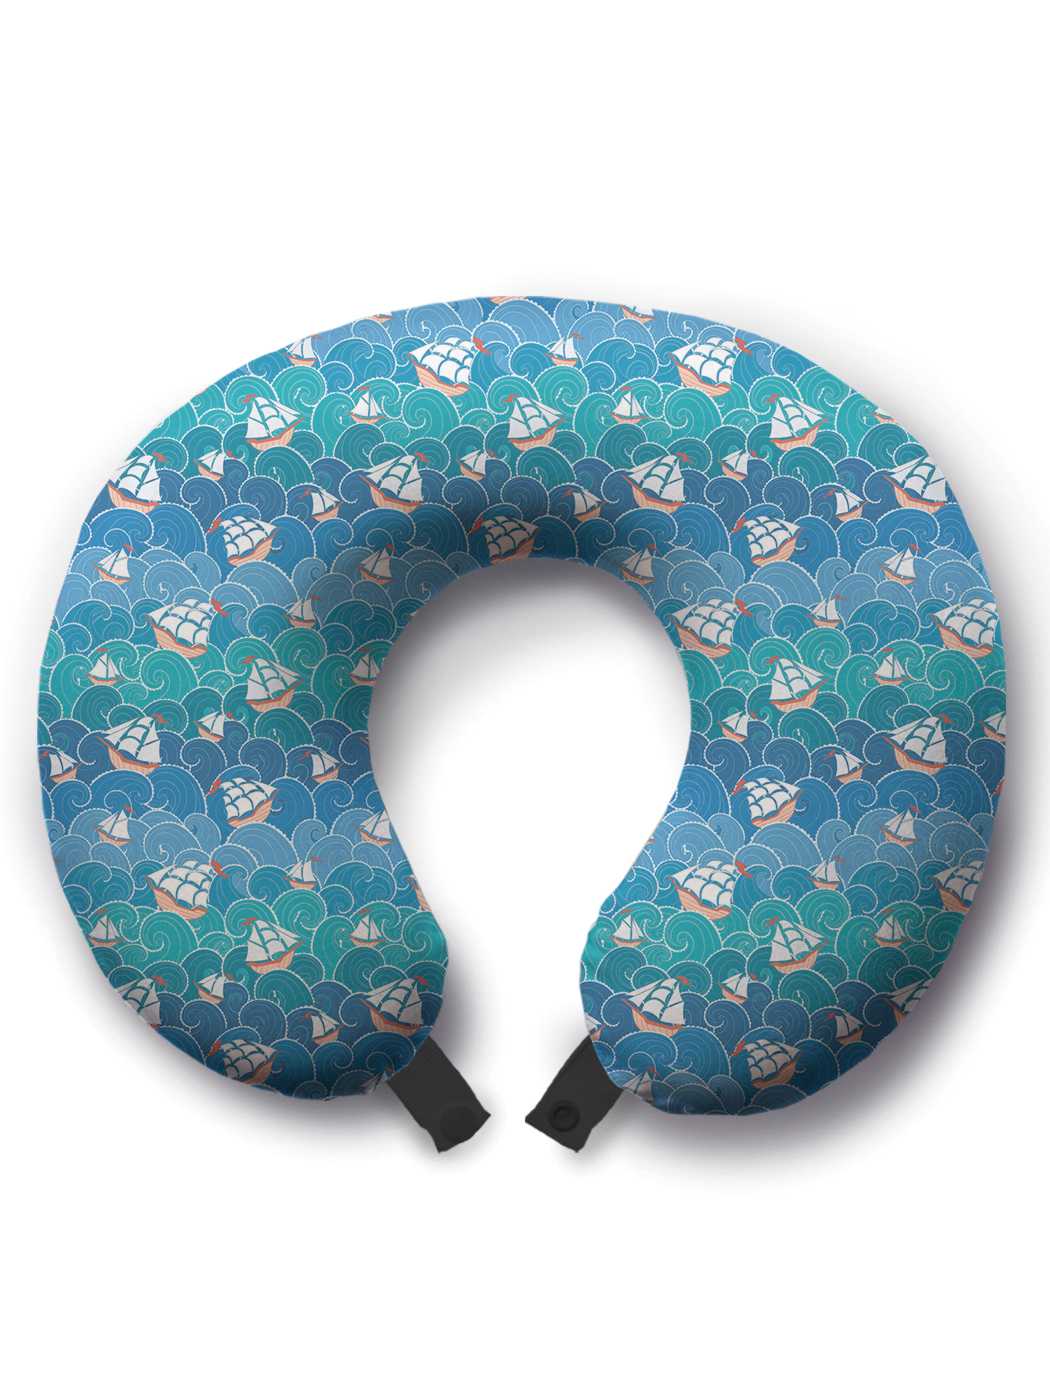 фото Дорожная подушка joyarty оживленное плавание голубая